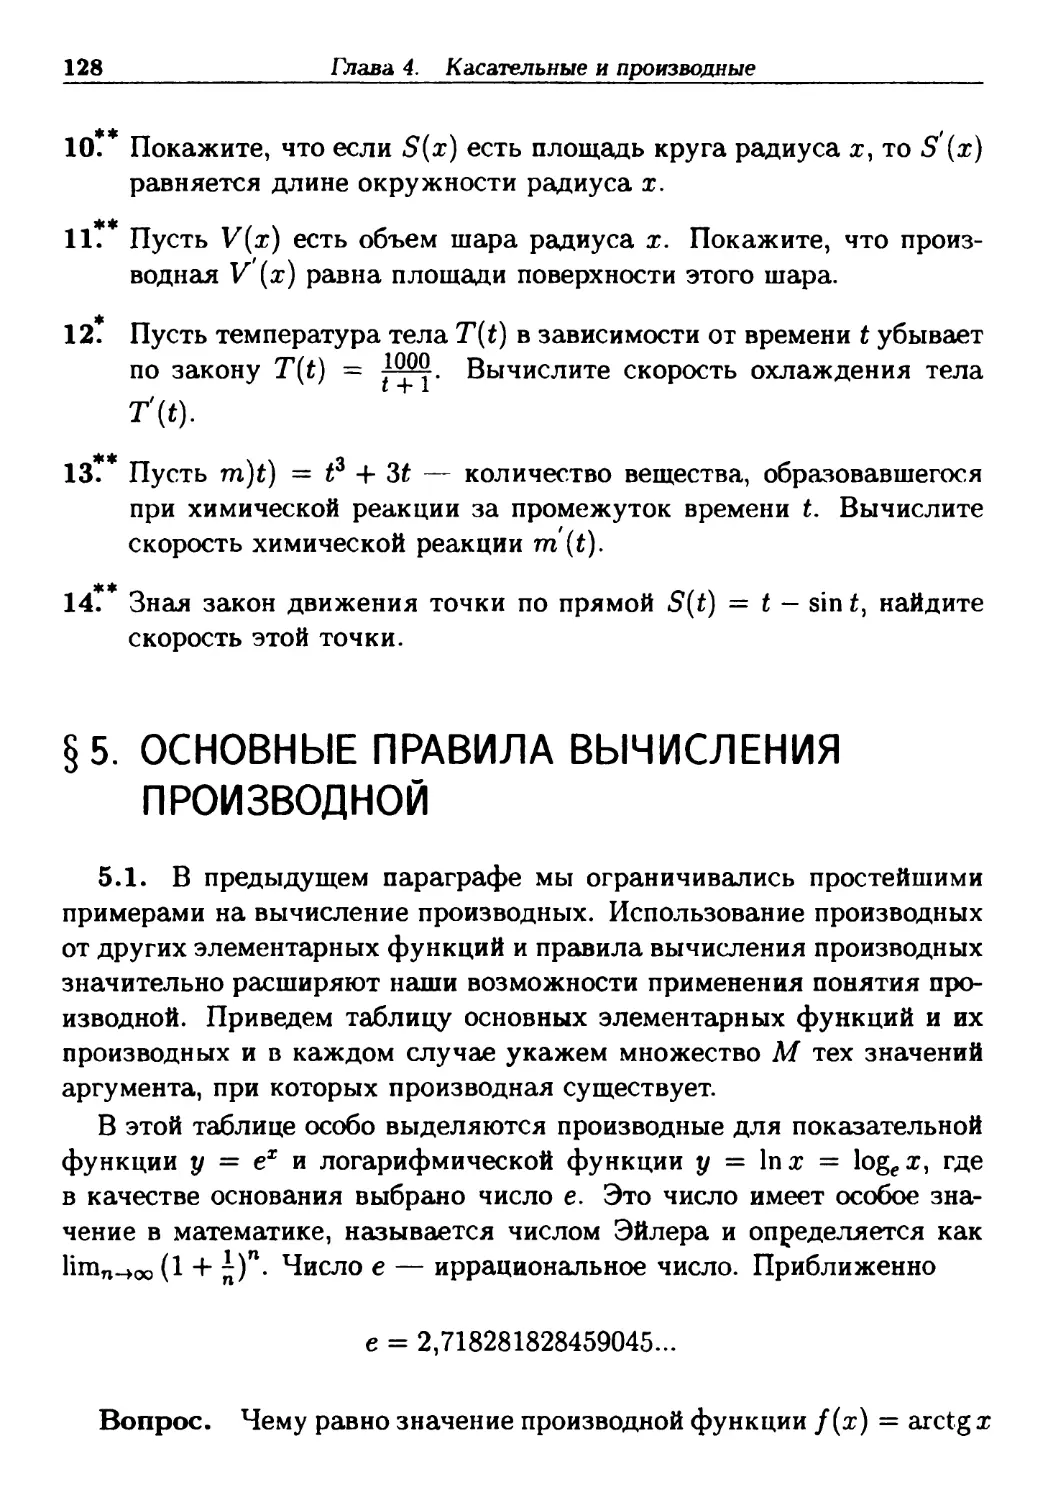 §5. Основные правила вычисления производной